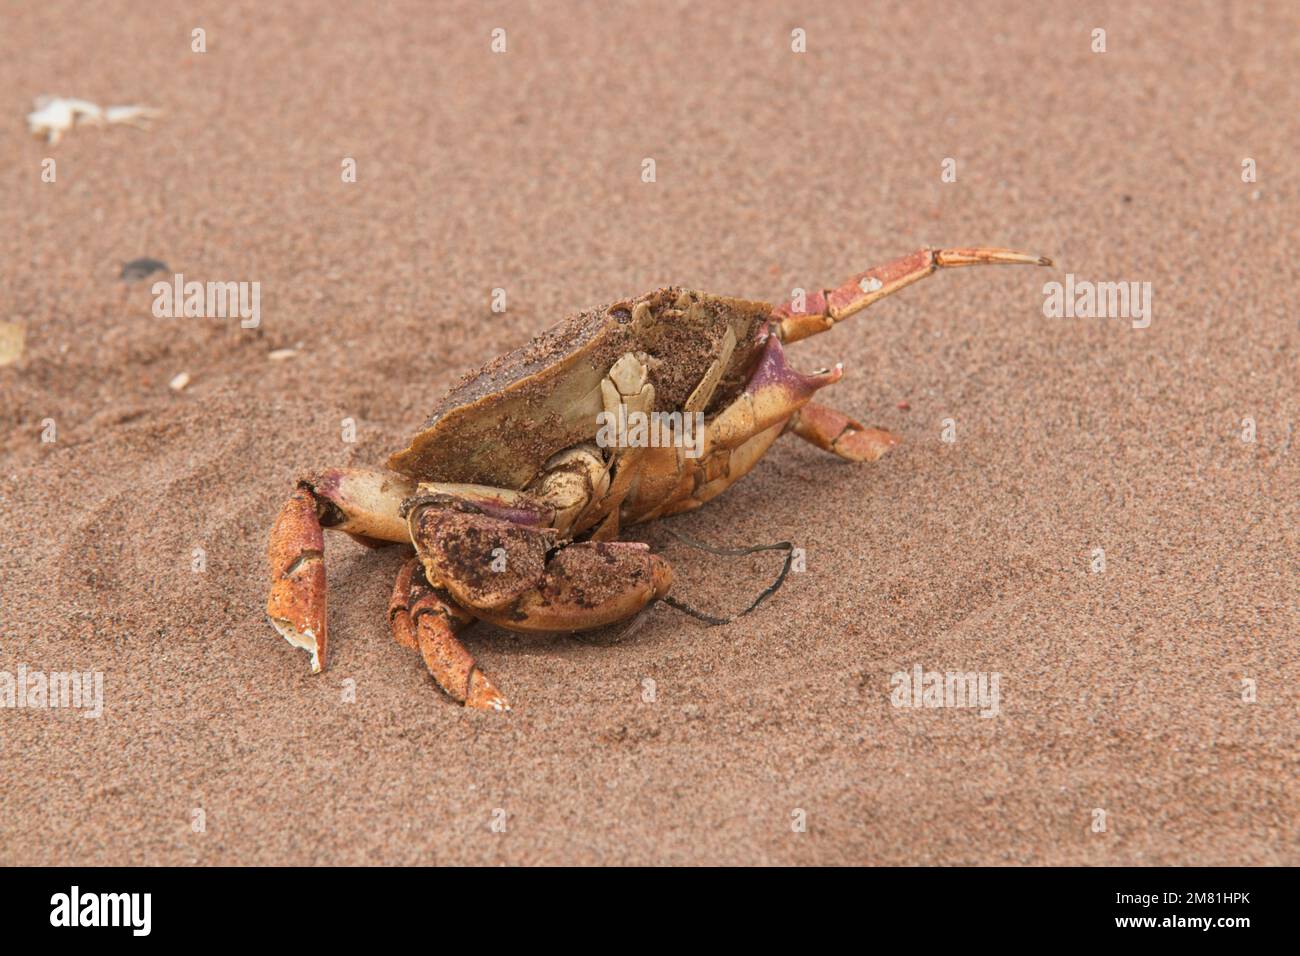 La journée sur une plage s'est terminée sur une note assez crabby. Digby, Nouvelle-Écosse. Banque D'Images